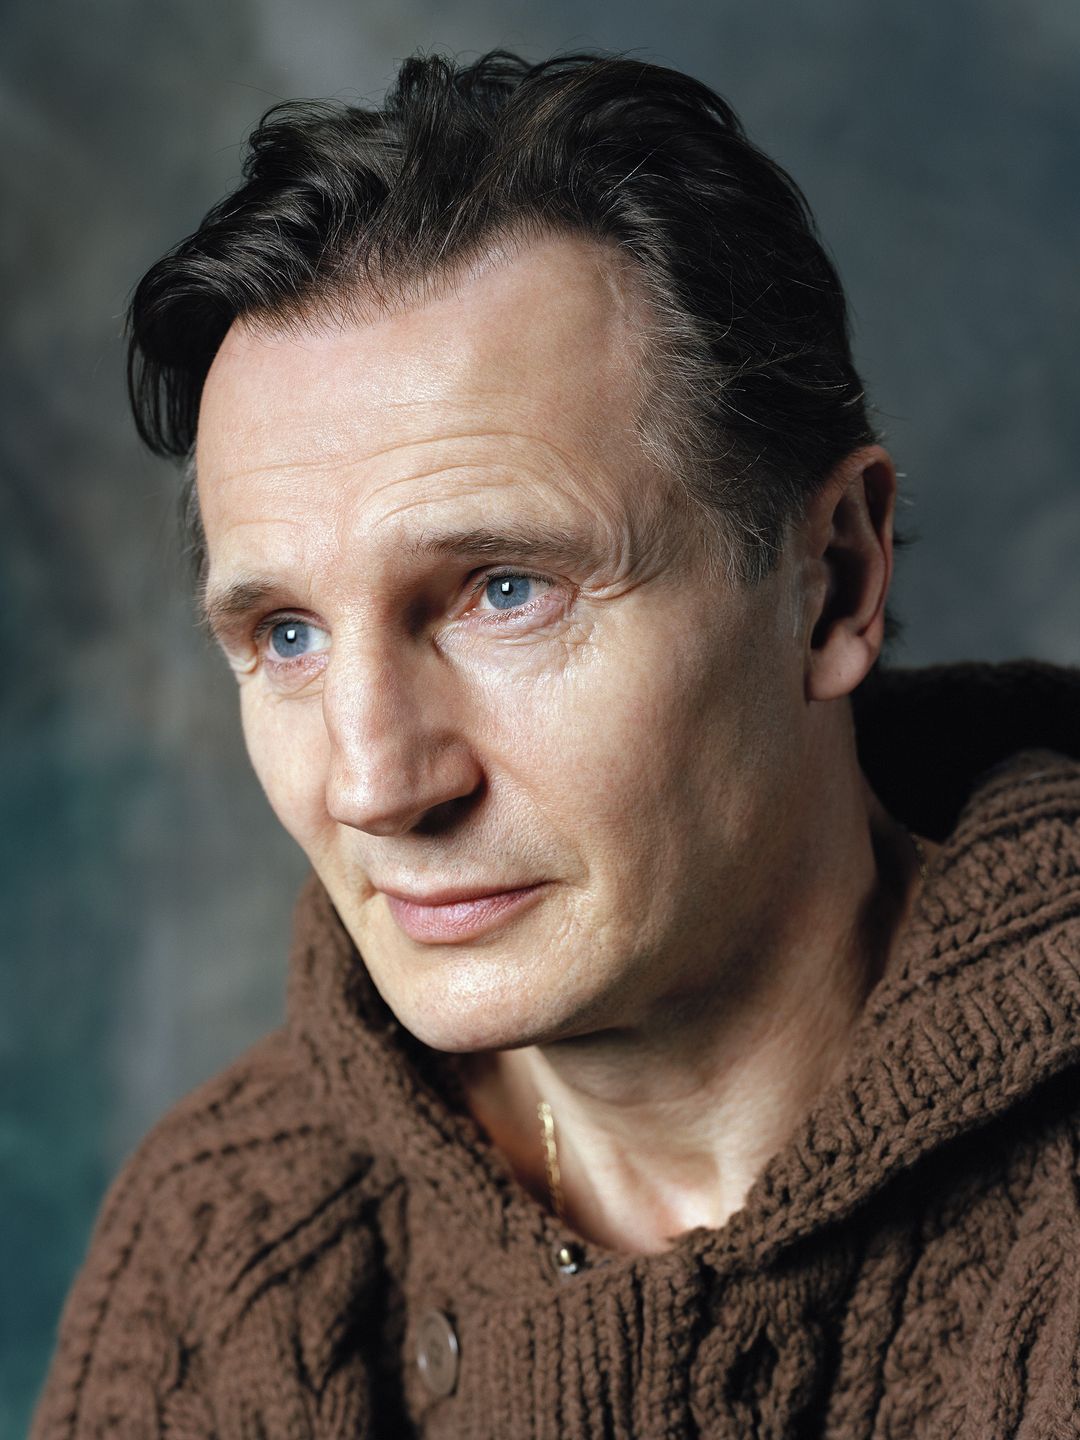 Liam Neeson personal traits